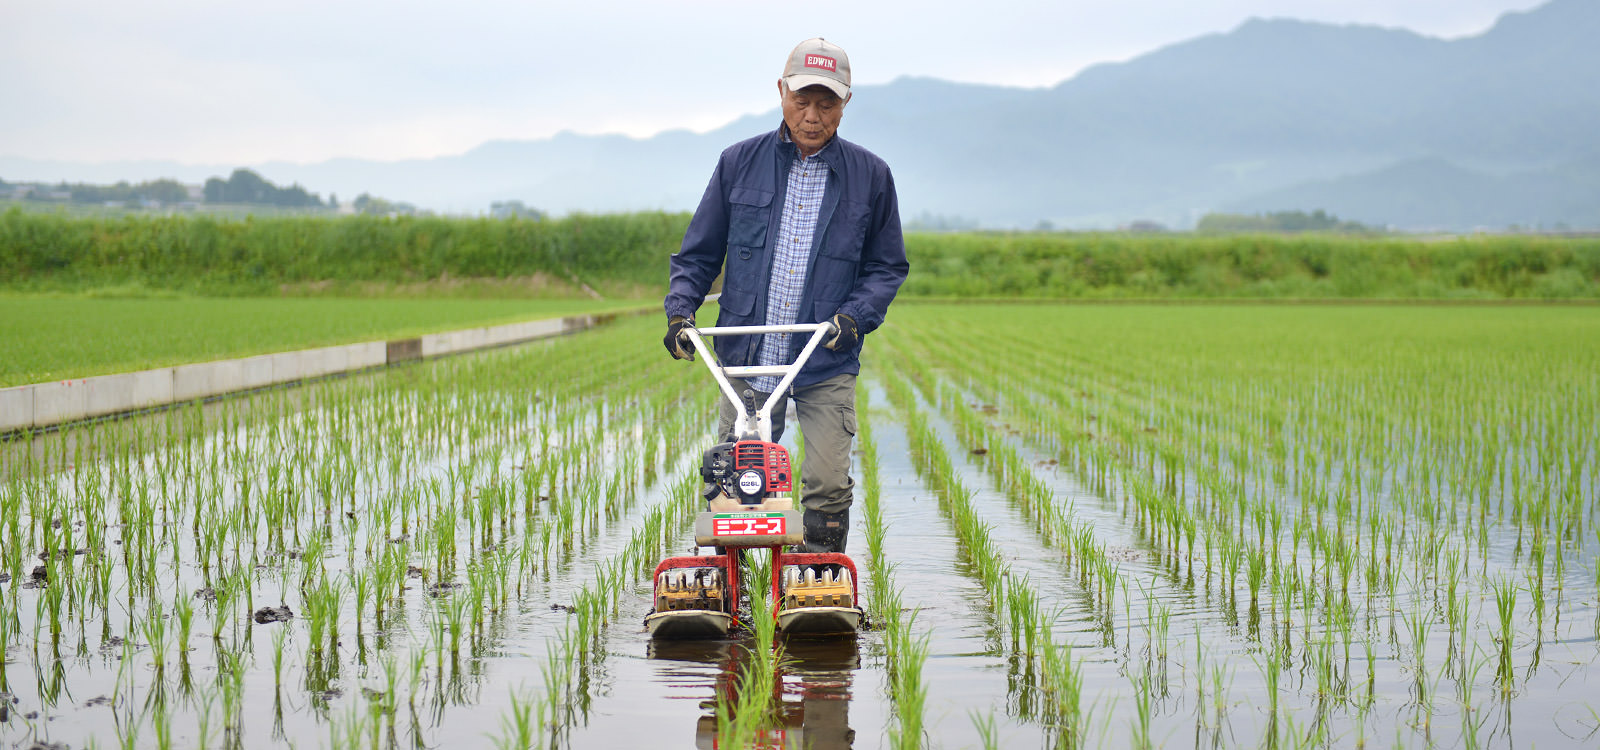 荒牧武治さんが作る、無農薬・無施肥栽培のお米。